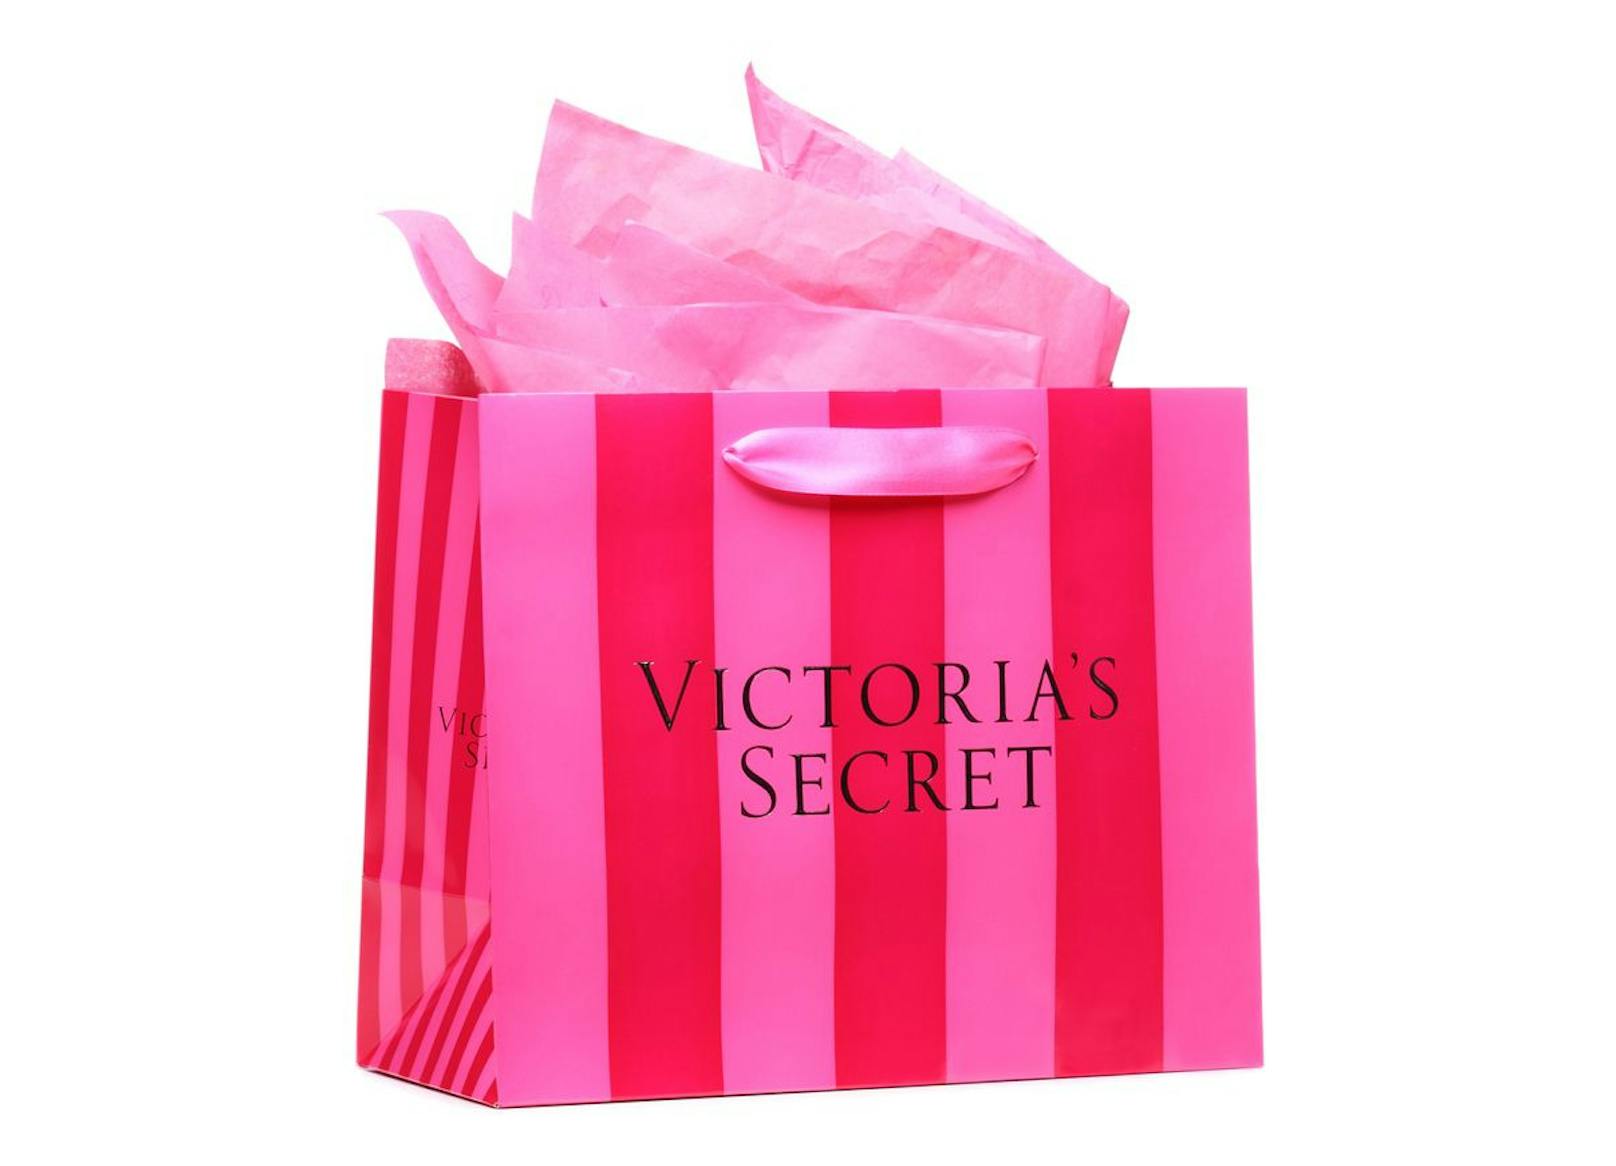 Bekannt wurde die Marke vor allem durch die berühmte "Victoria's Secret Fashion Show".